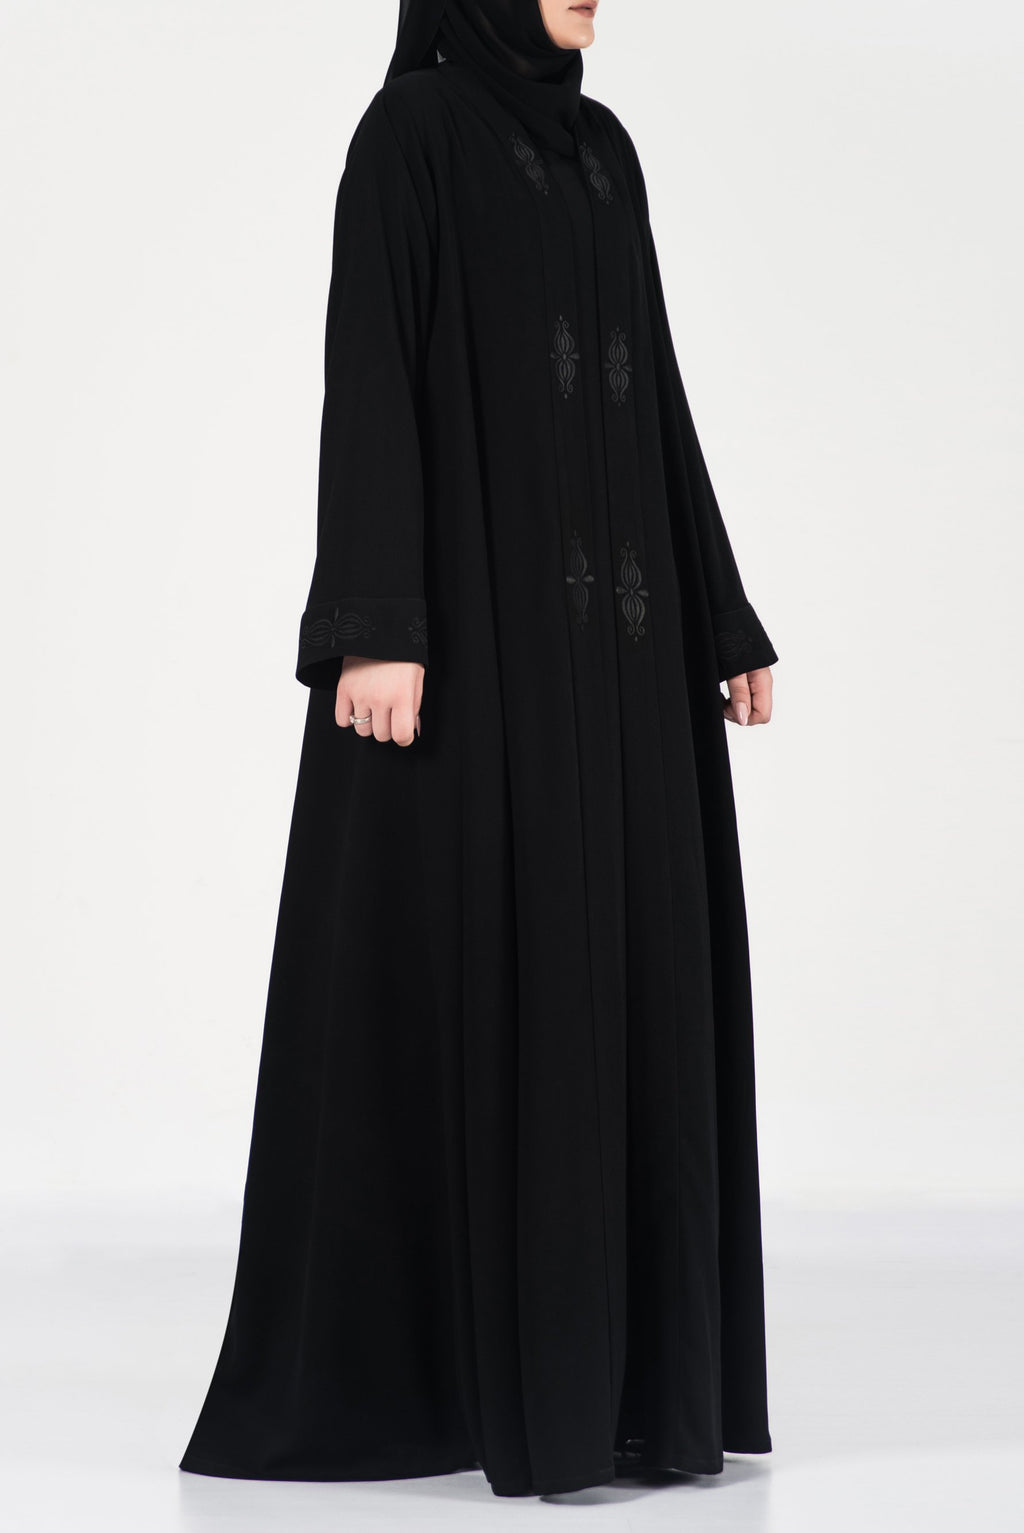 Black Embroidery Abaya - thowby - Dubai online abaya shops